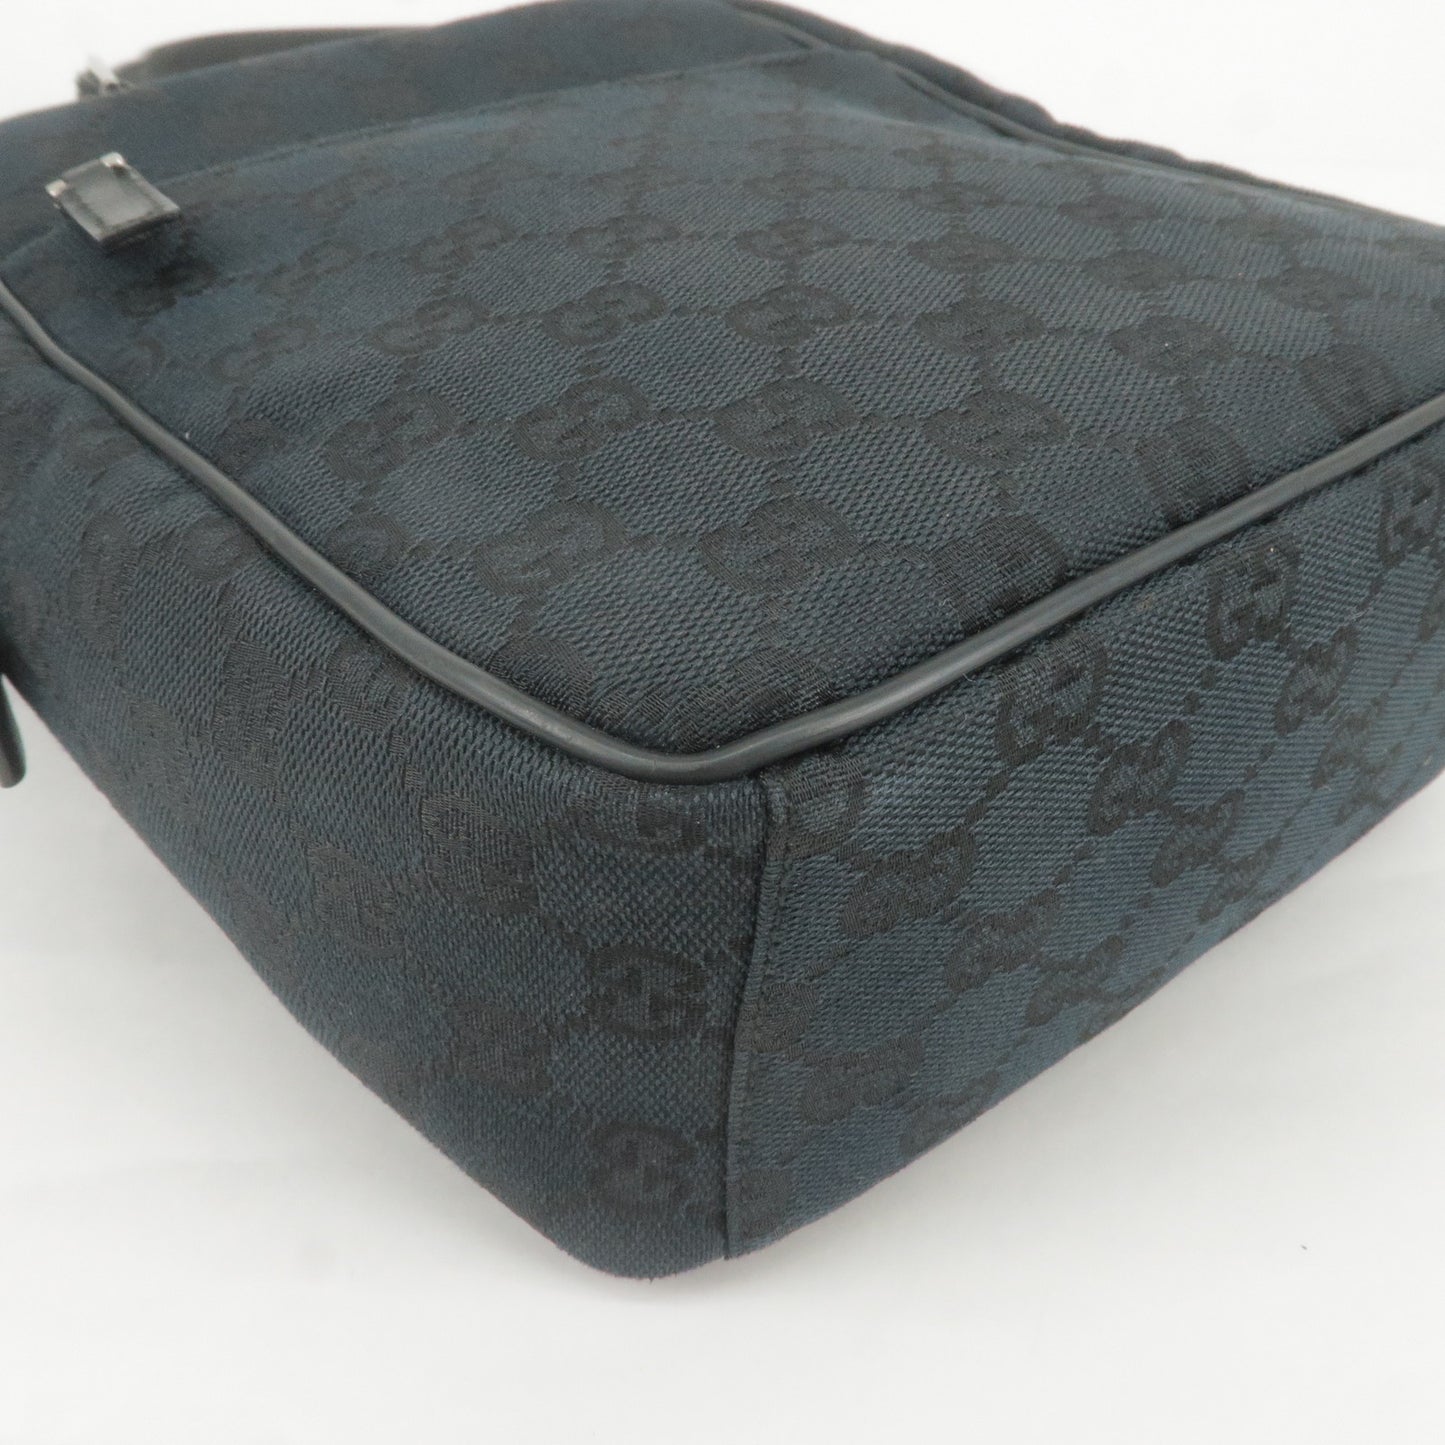 GUCCI GG Canvas Leather Shoulder Bag Hand Bag Black 018 1612